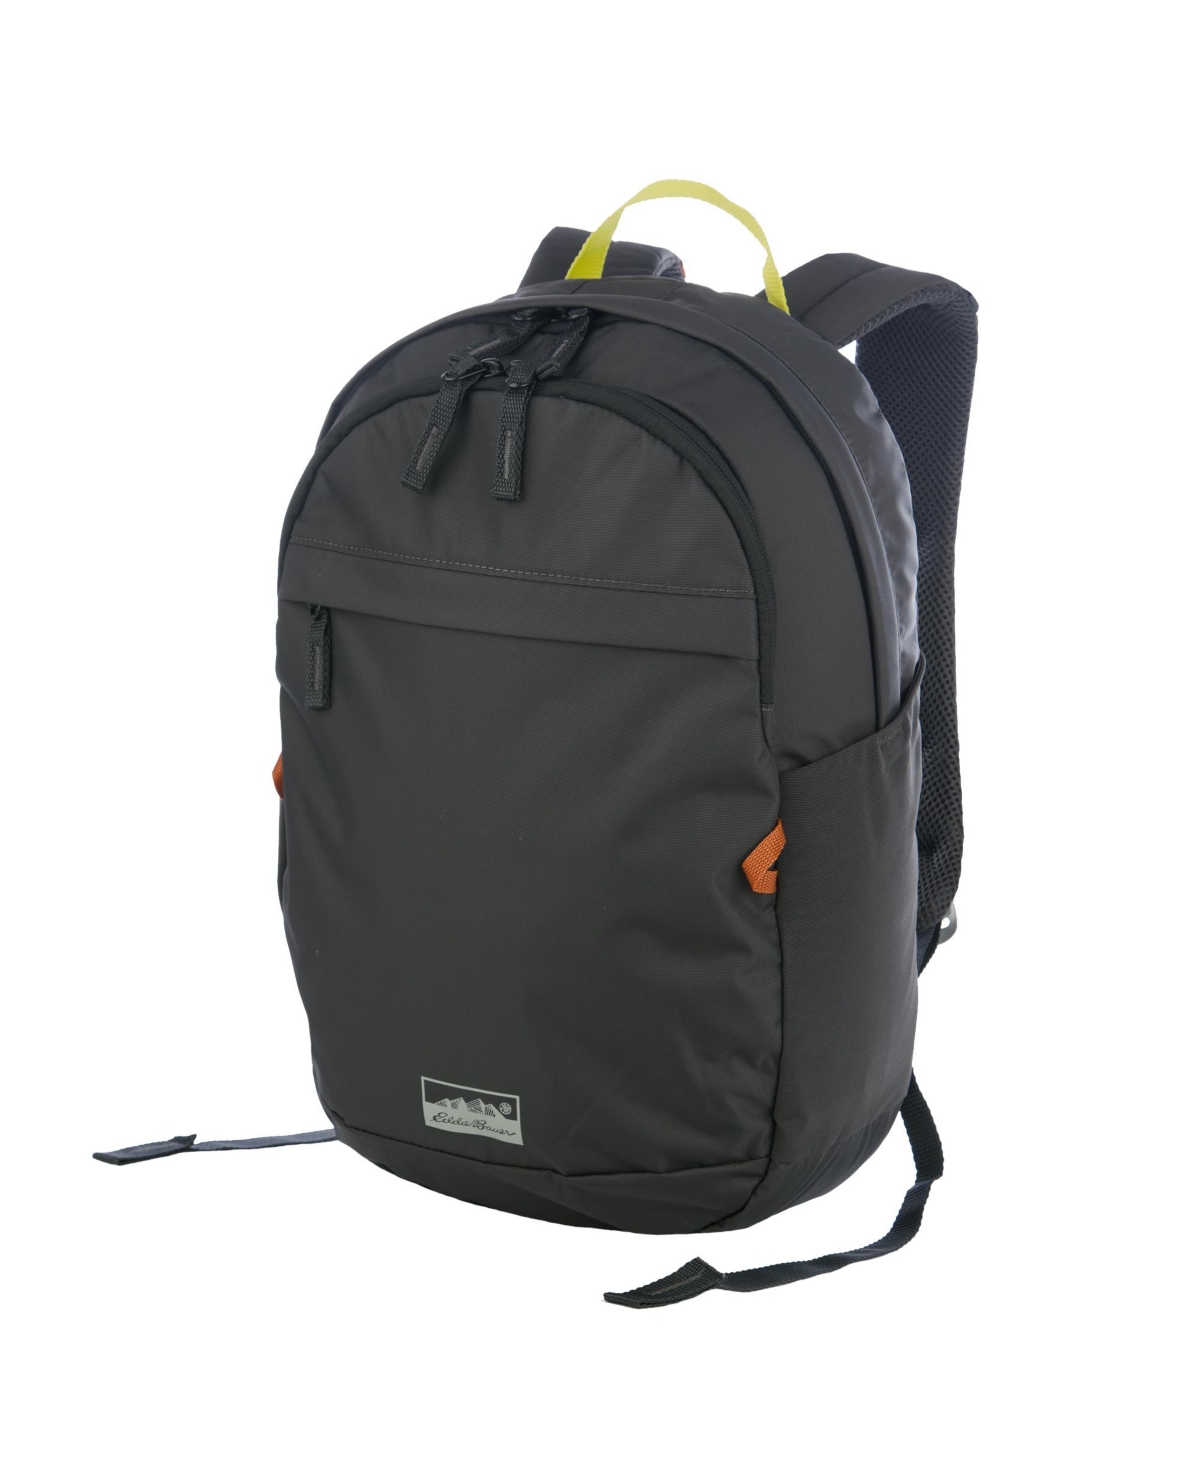 20L Venture Backpack Daypack - Dusty Jade